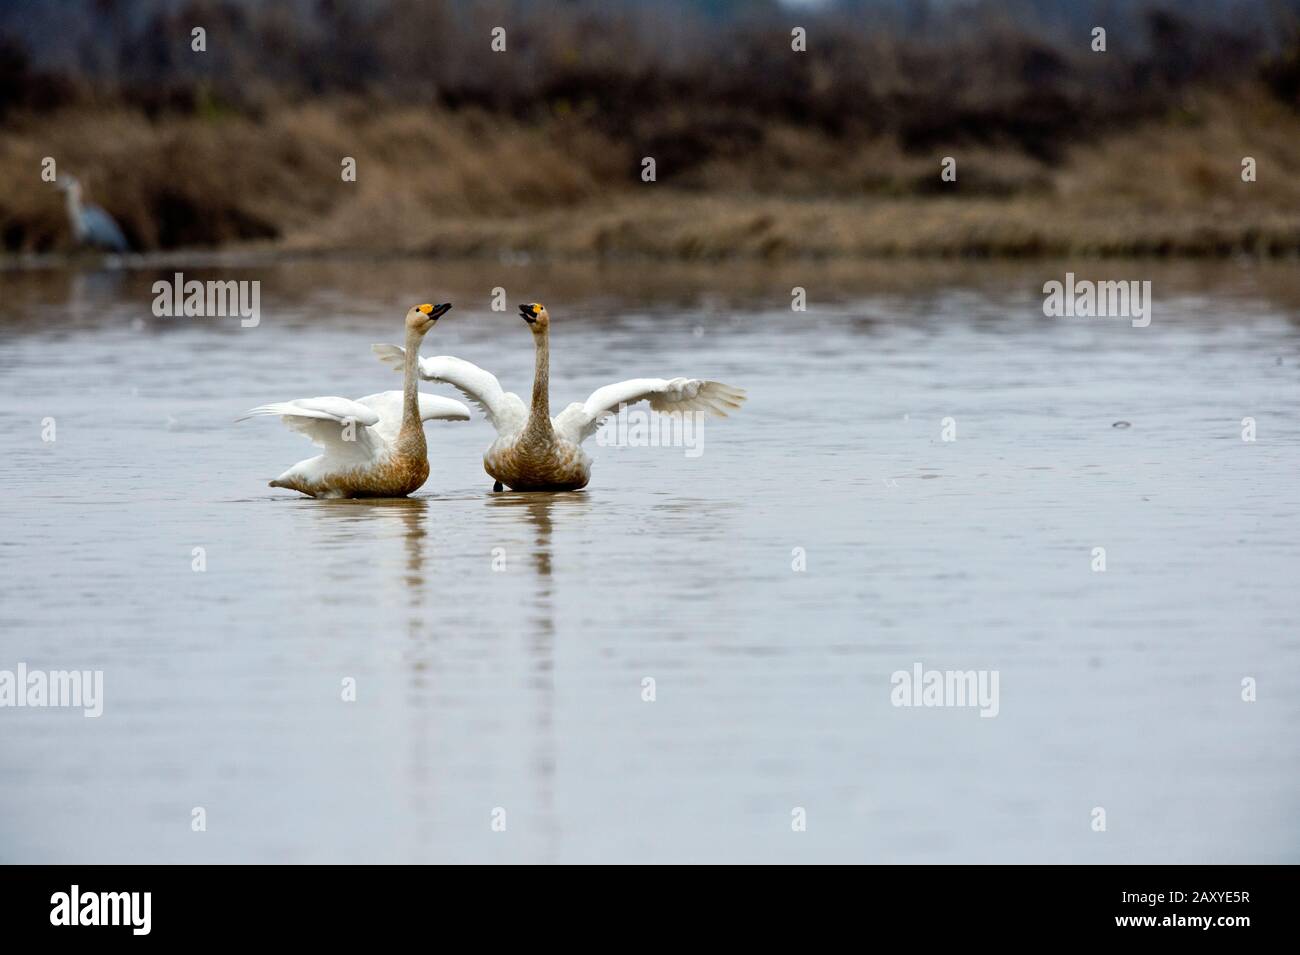 Whooper swans (Cygnus cygnus) breeding behavior at Wuxing Farm, Wuxing Nonchang, Poyang Lake Basin, east-central China Stock Photo